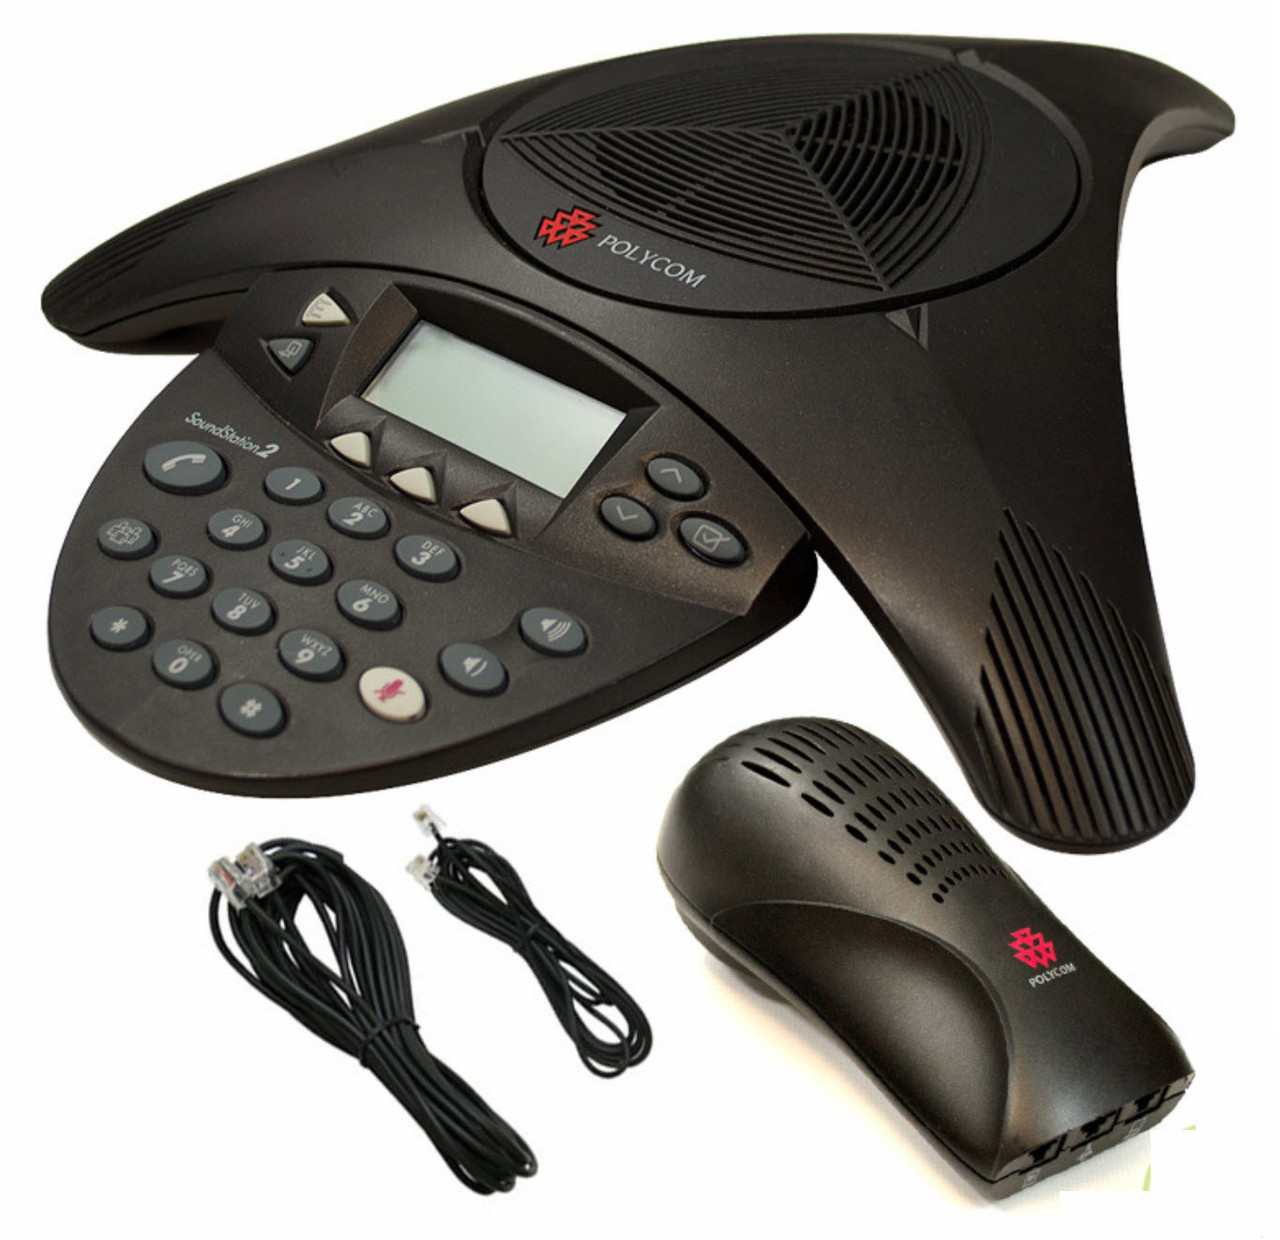 Polycom SoundStation2 Expandable Conference Phone 2200-16200-001 